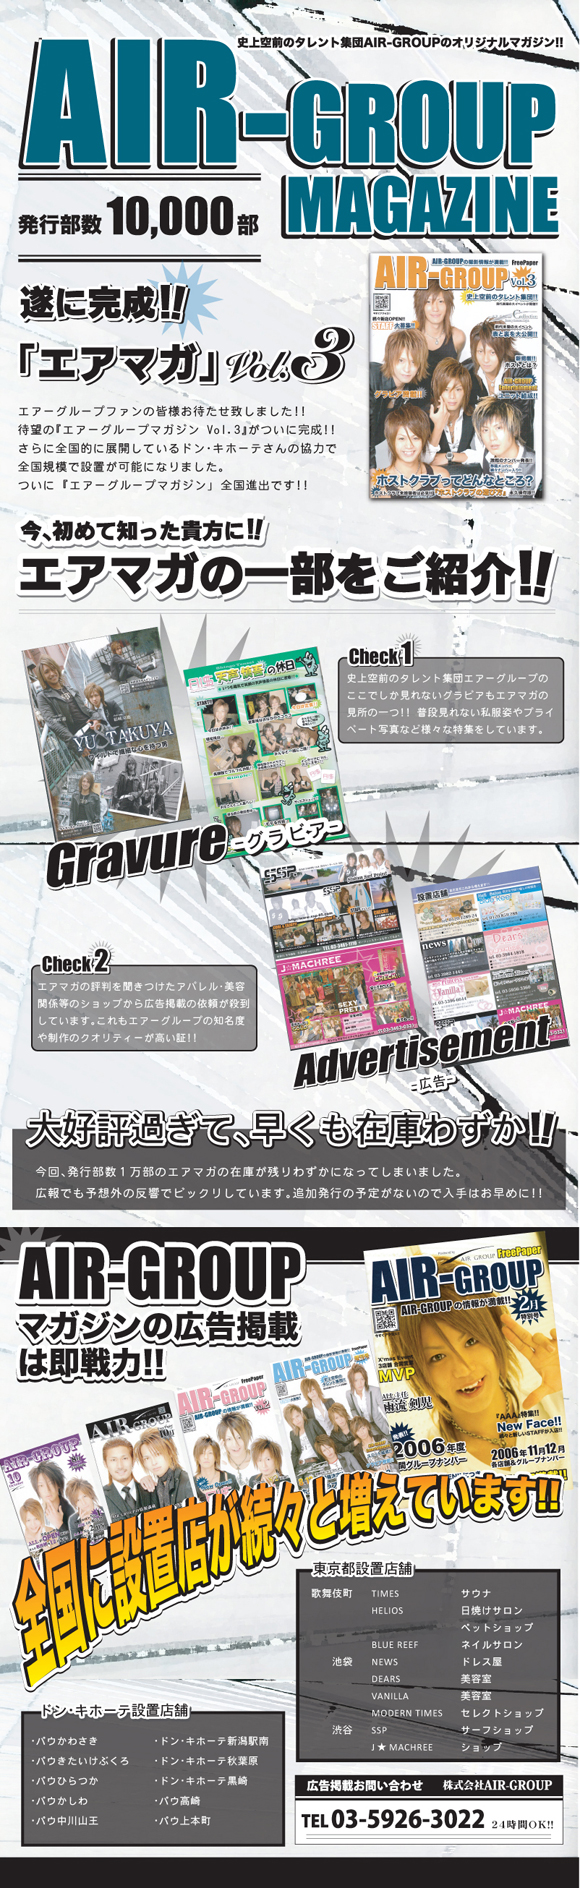 歌舞伎町のホストクラブ、エアーグループの発行する「AIRGROUPMagazine」のご紹介。広告掲載店様、設置店様大募集中です。